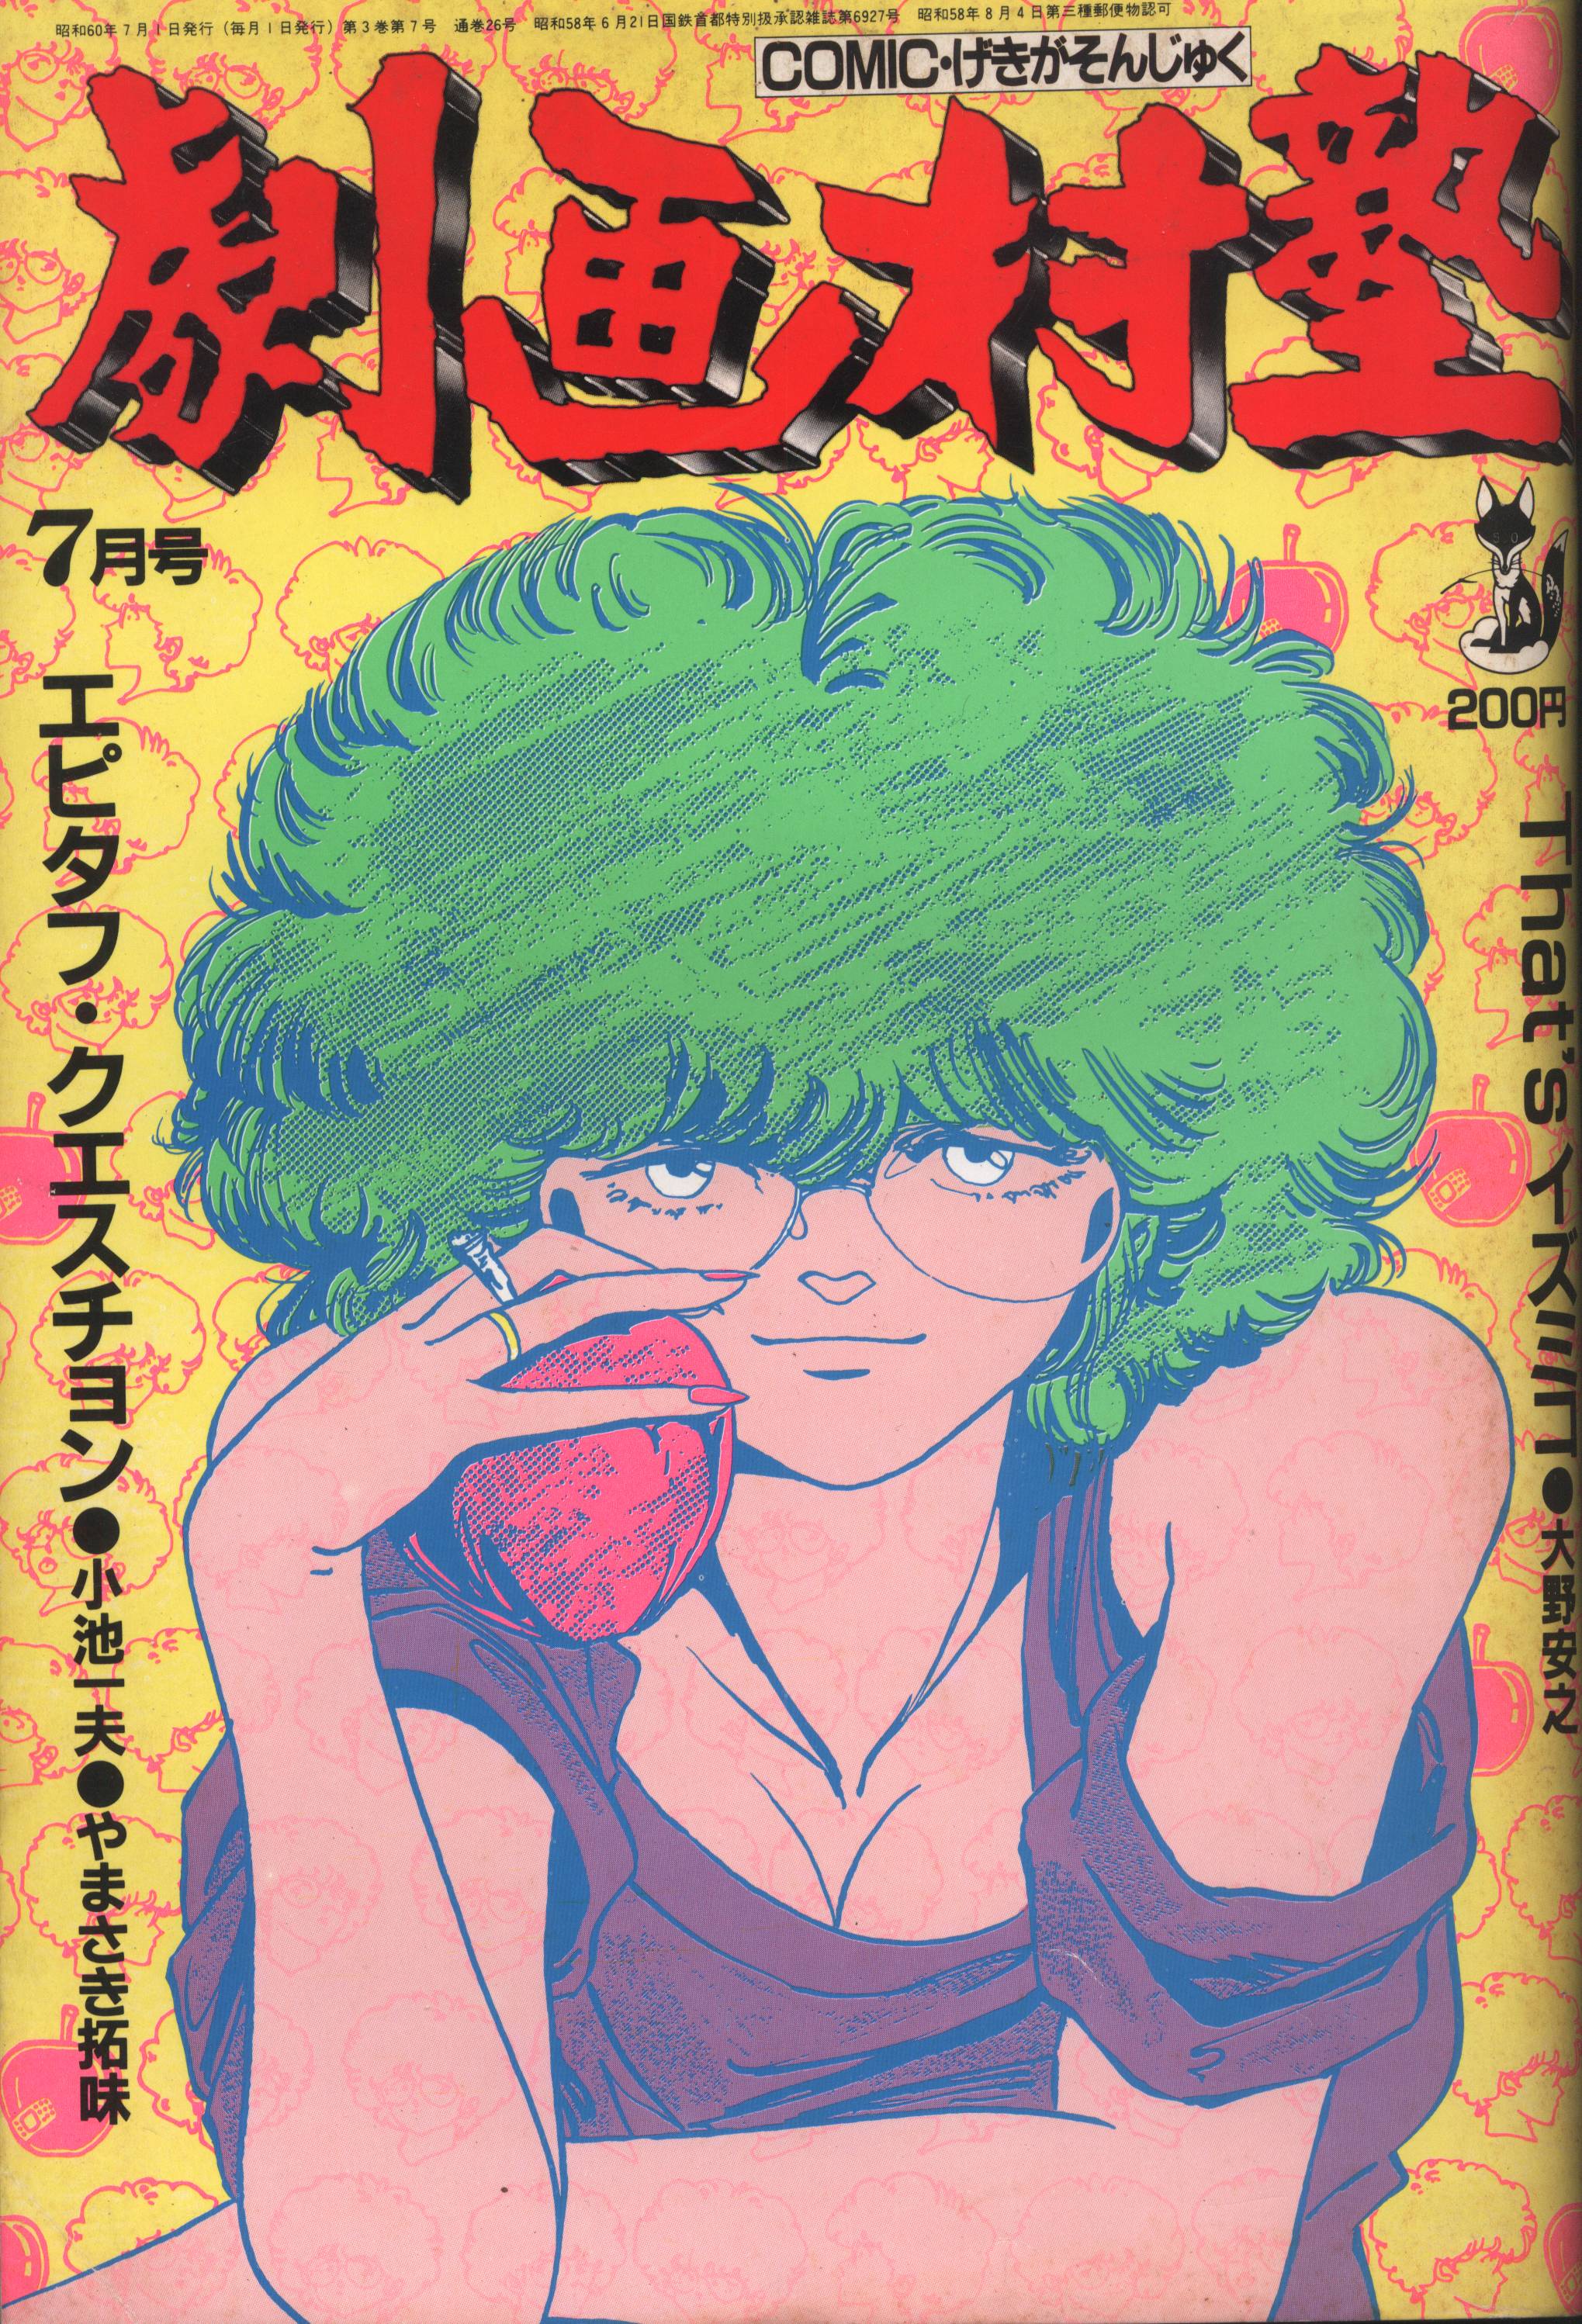 スタジオ・シップ 1985年(昭和60年)の漫画雑誌 コミック劇画村塾 1985